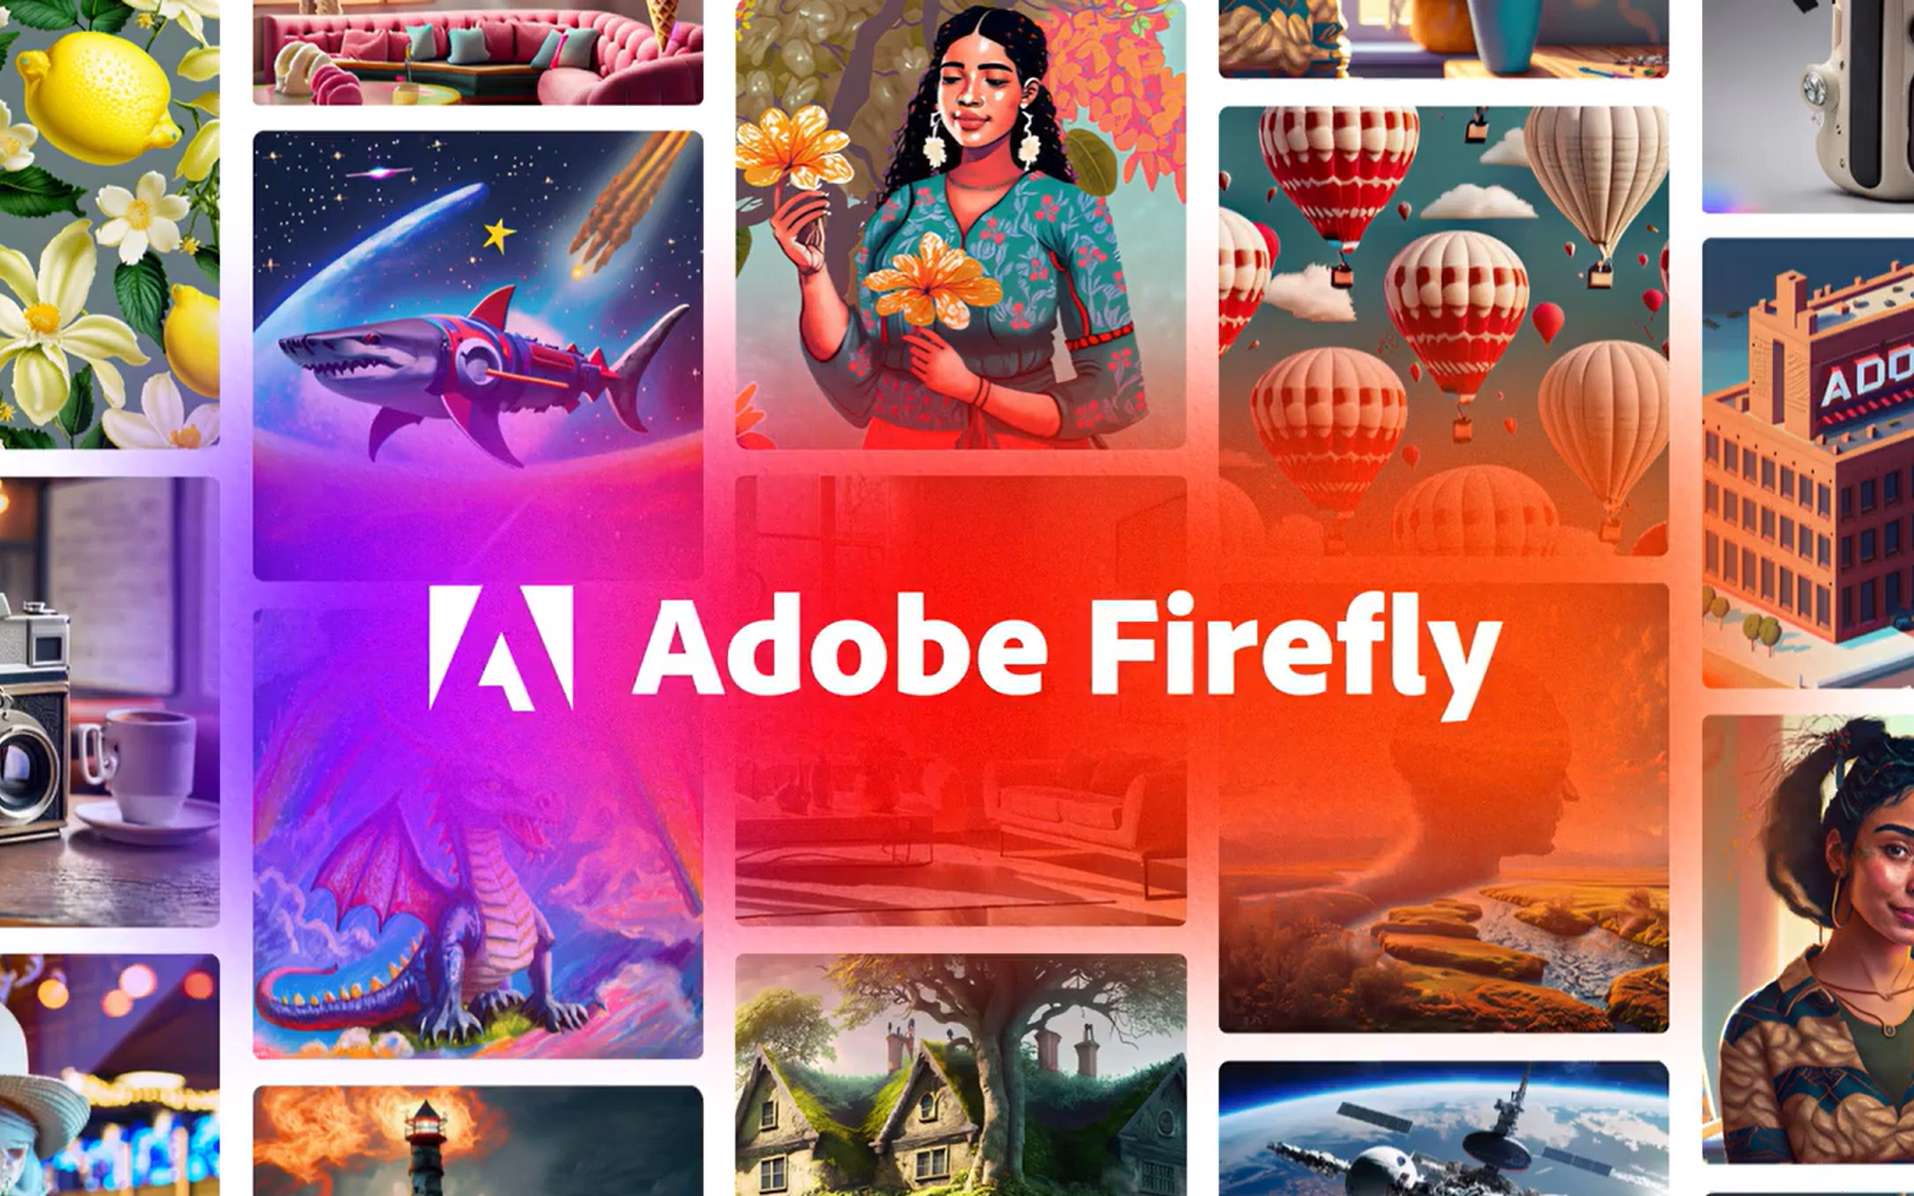 Adobe aussi lance une Intelligence artificielle pour créer des images